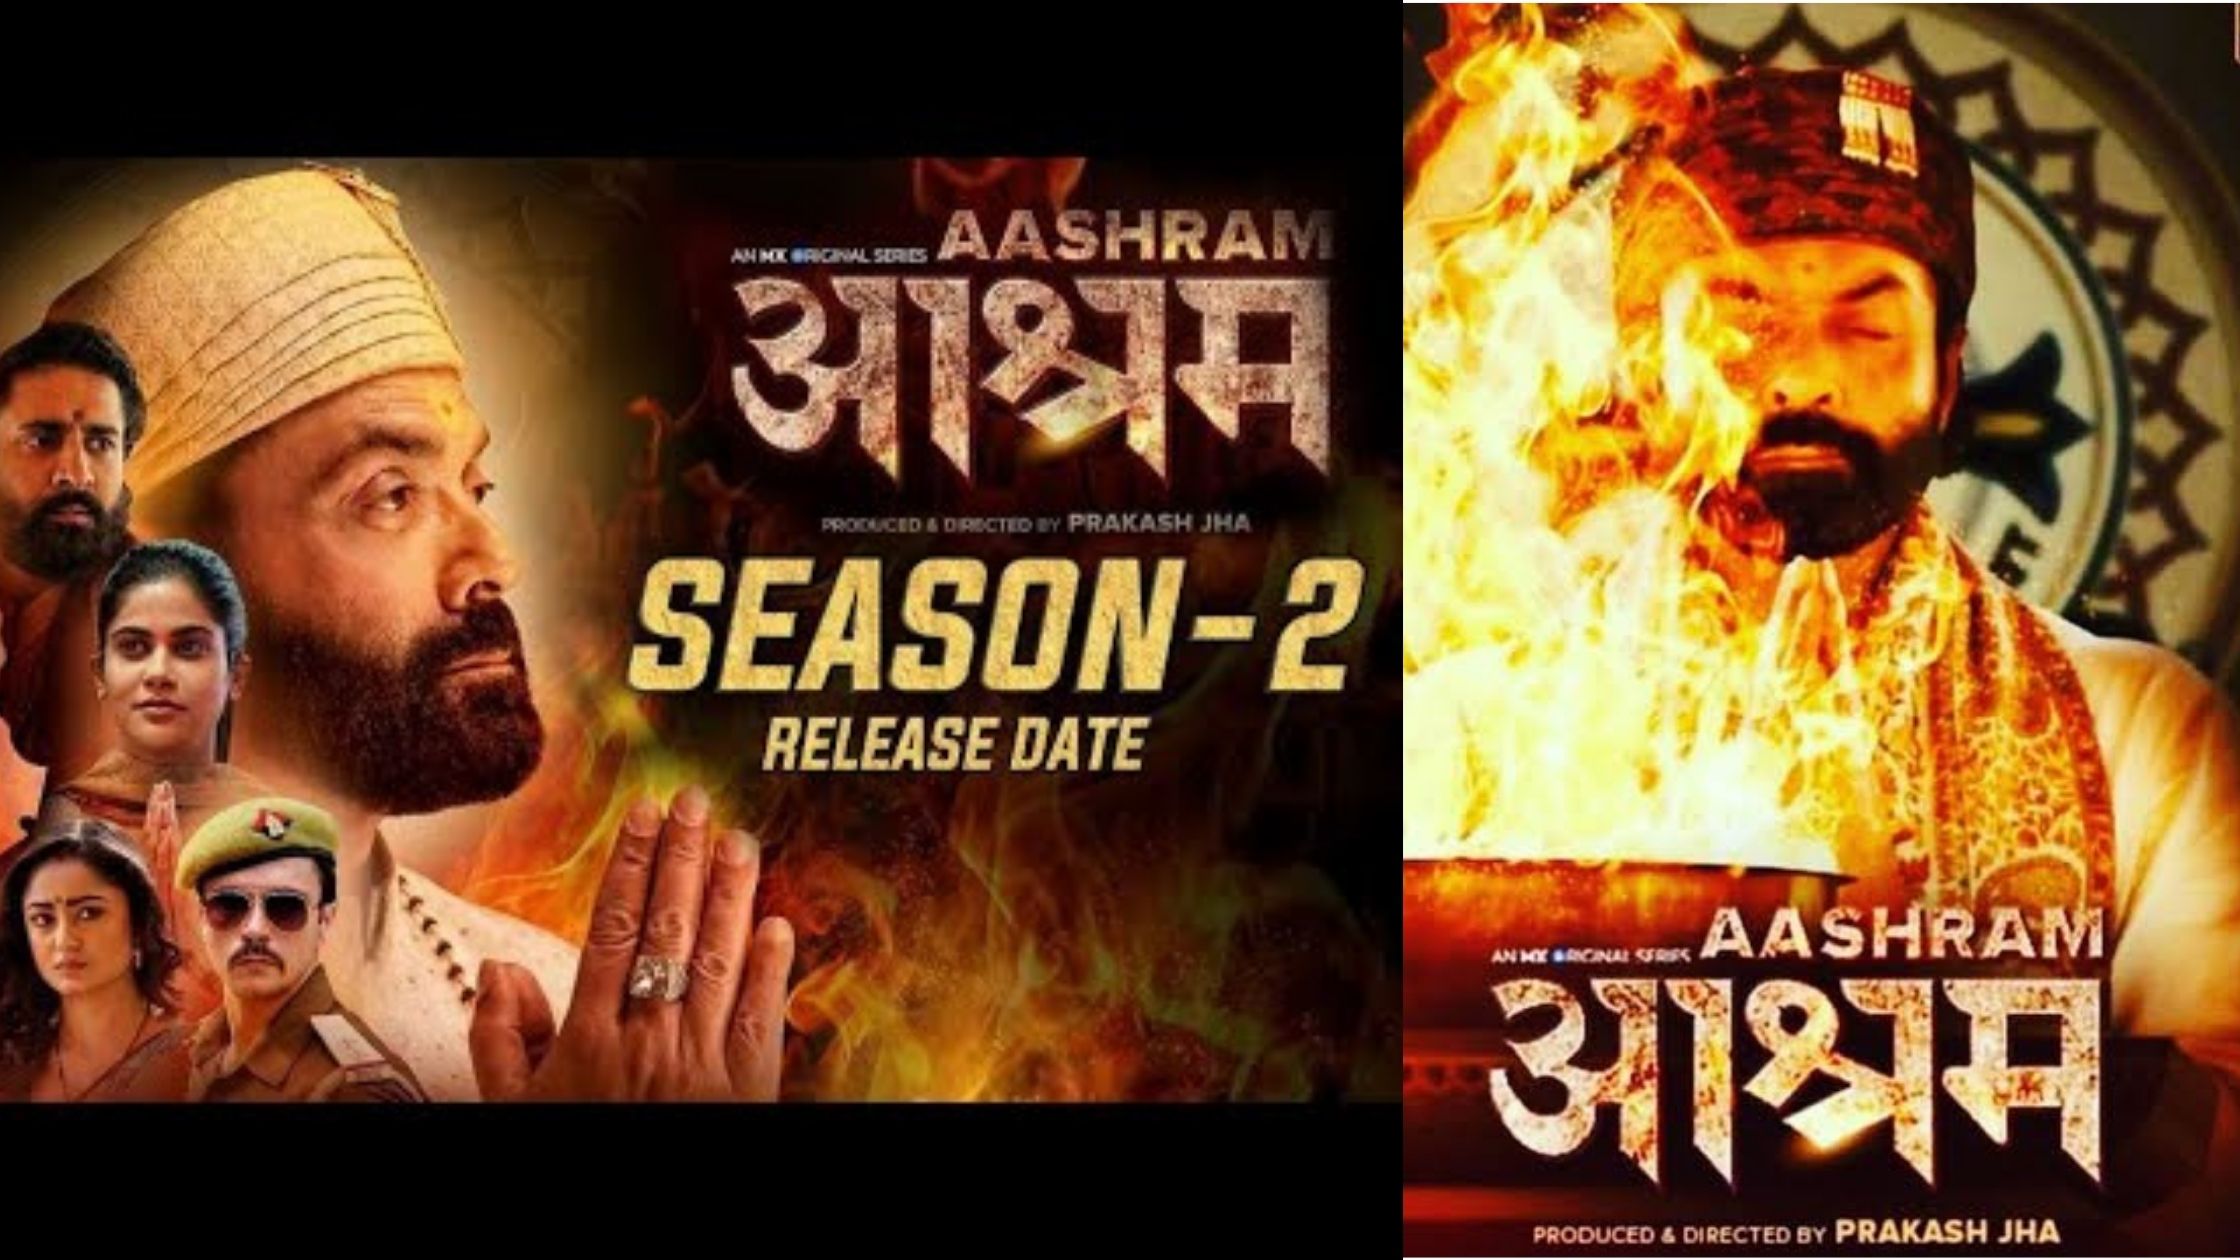 Ashram second season